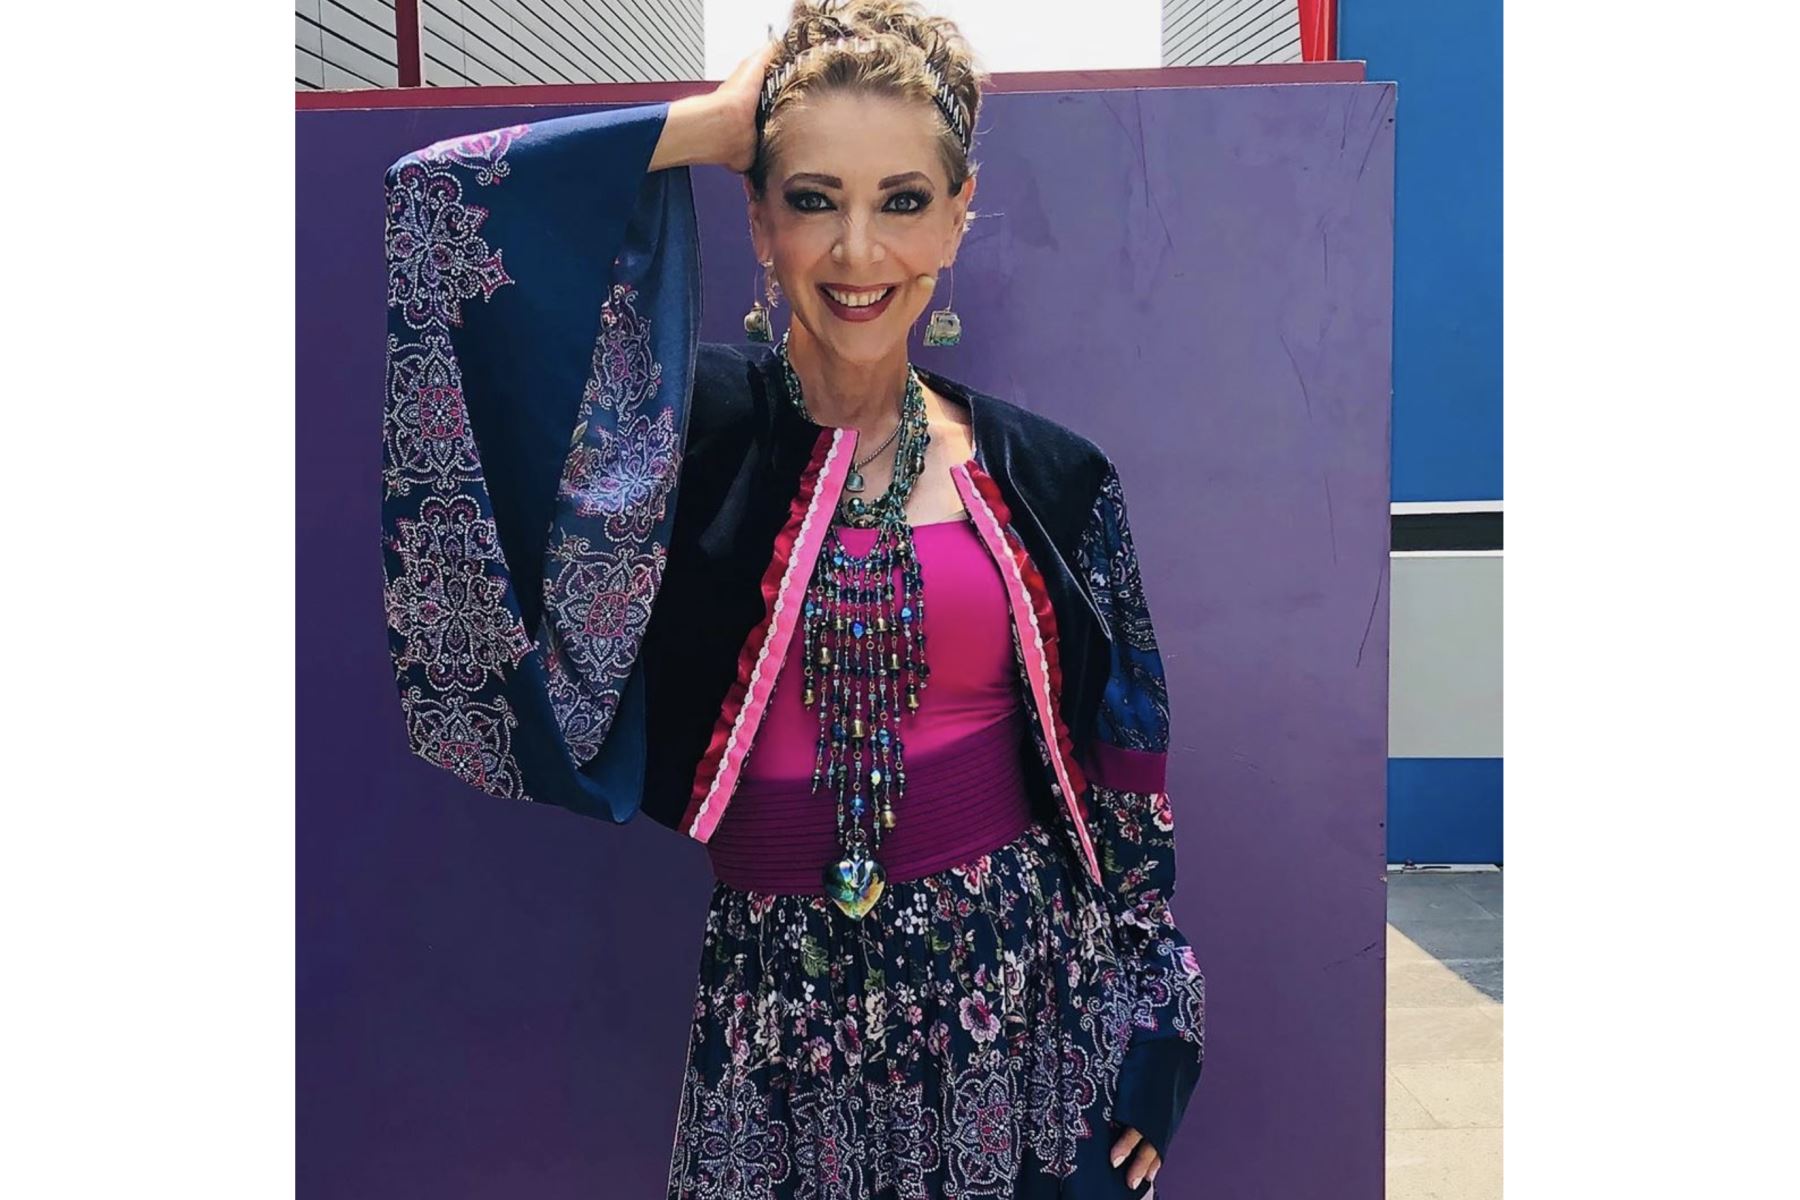 La actriz mexicana será recordada por sus roles protagónicos en "Doña Bárbara" , "Salomé", entre otras telenovelas. Estaba internada en la Ciudad de México. Foto: Instagram